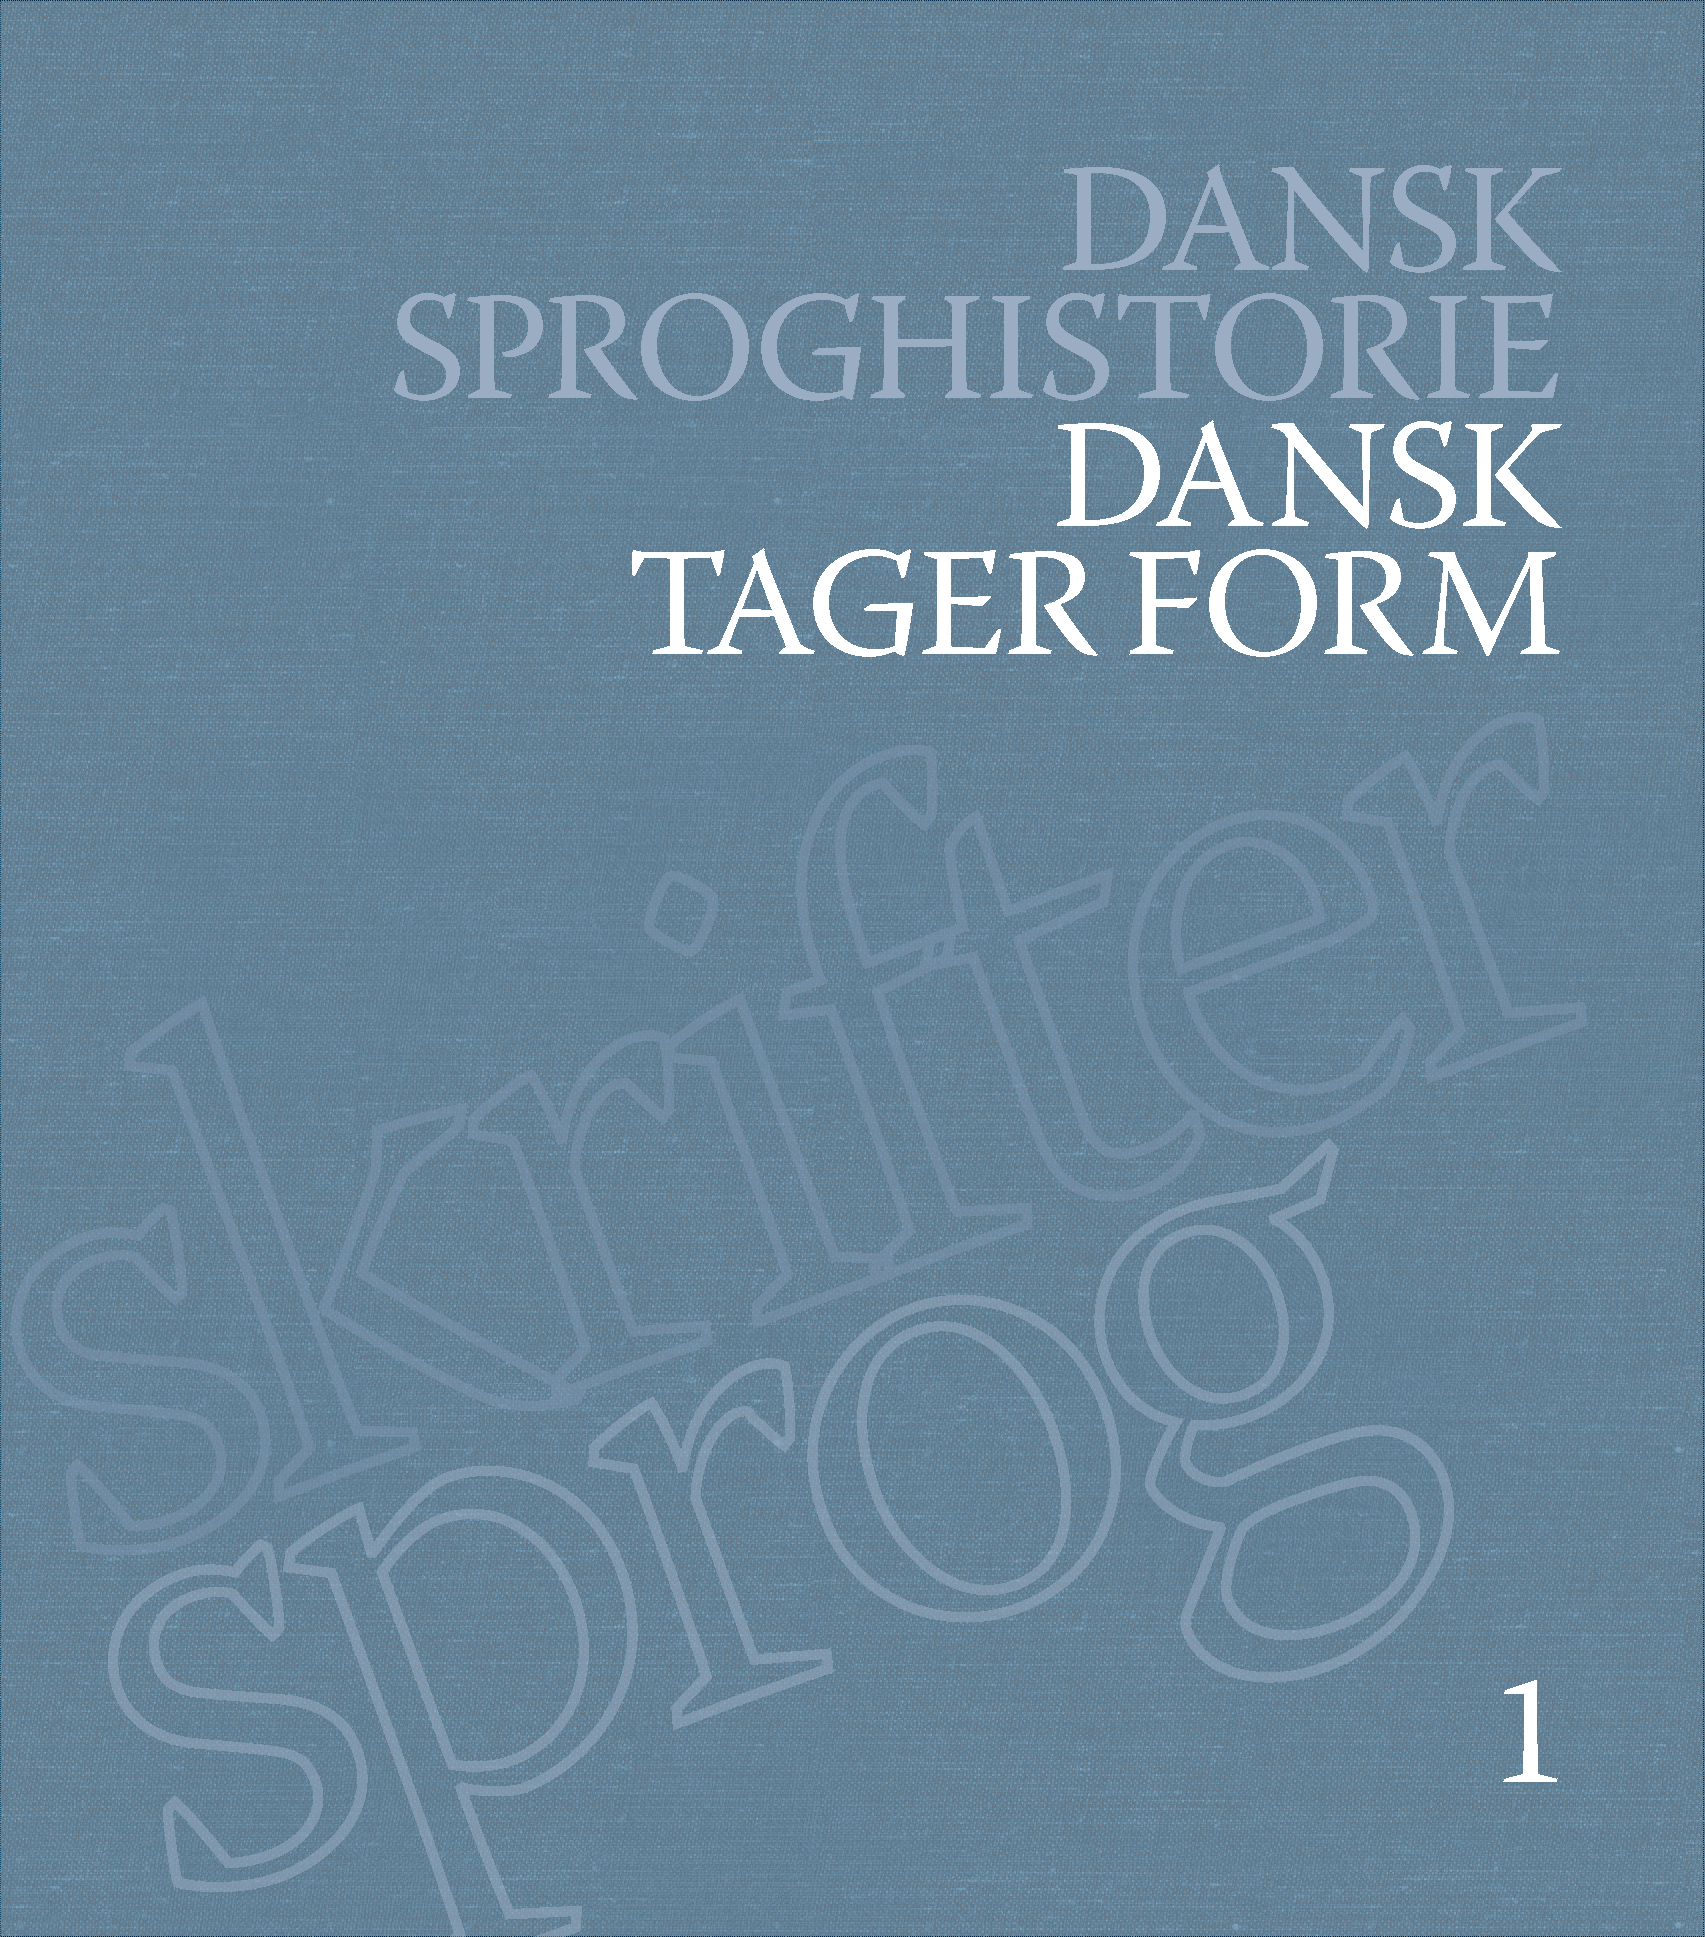 Dansk Sproghistorie 1-6, bd. 1